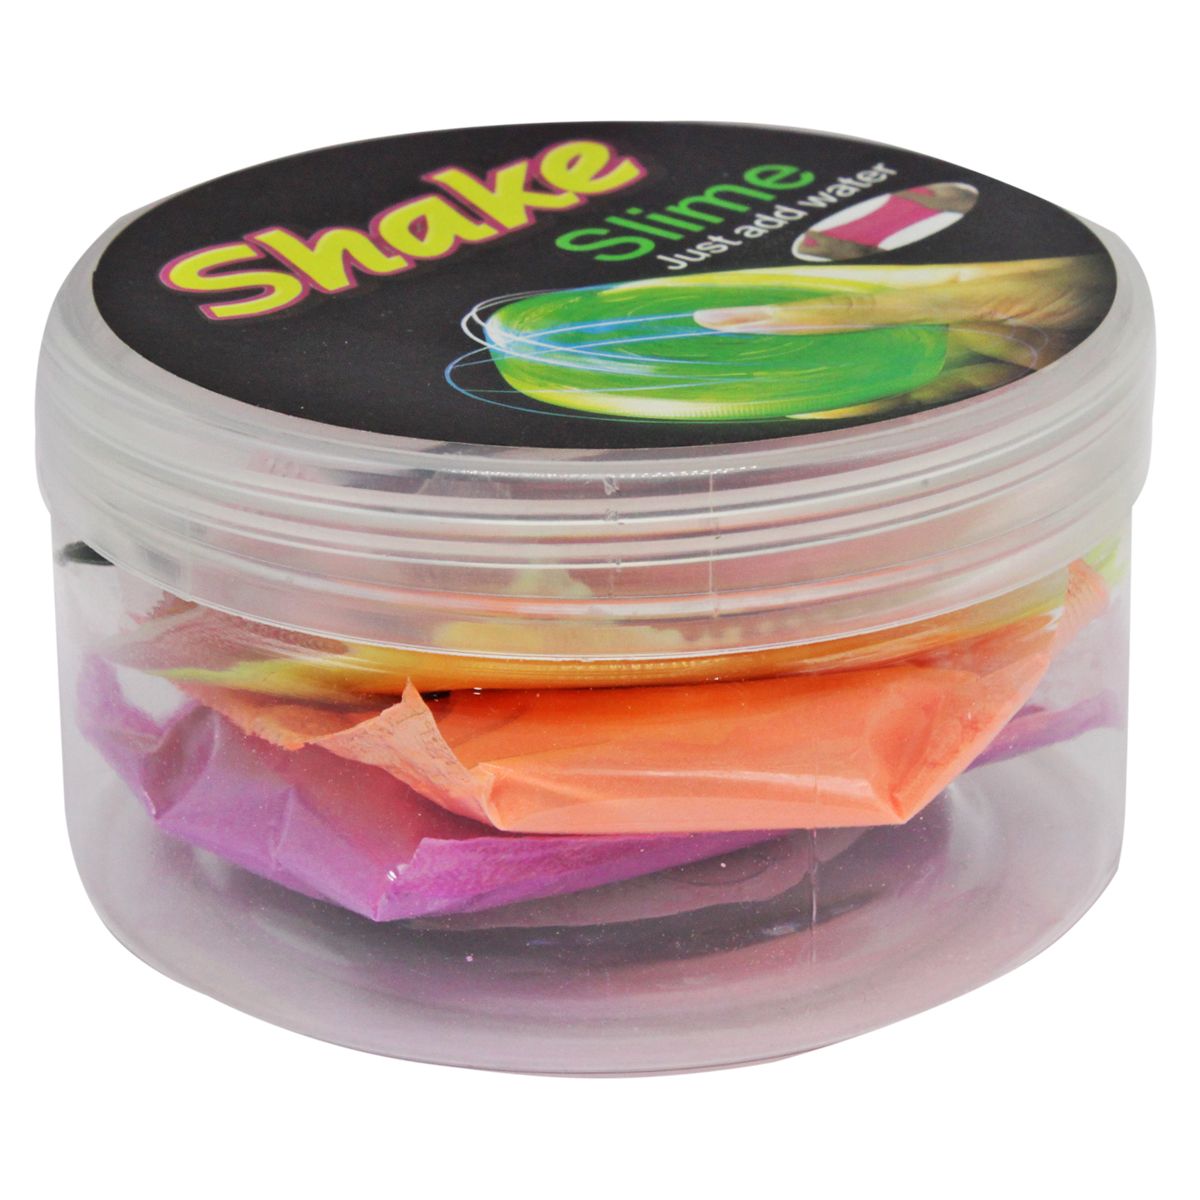 Набір для приготування слайма "Shake slime"